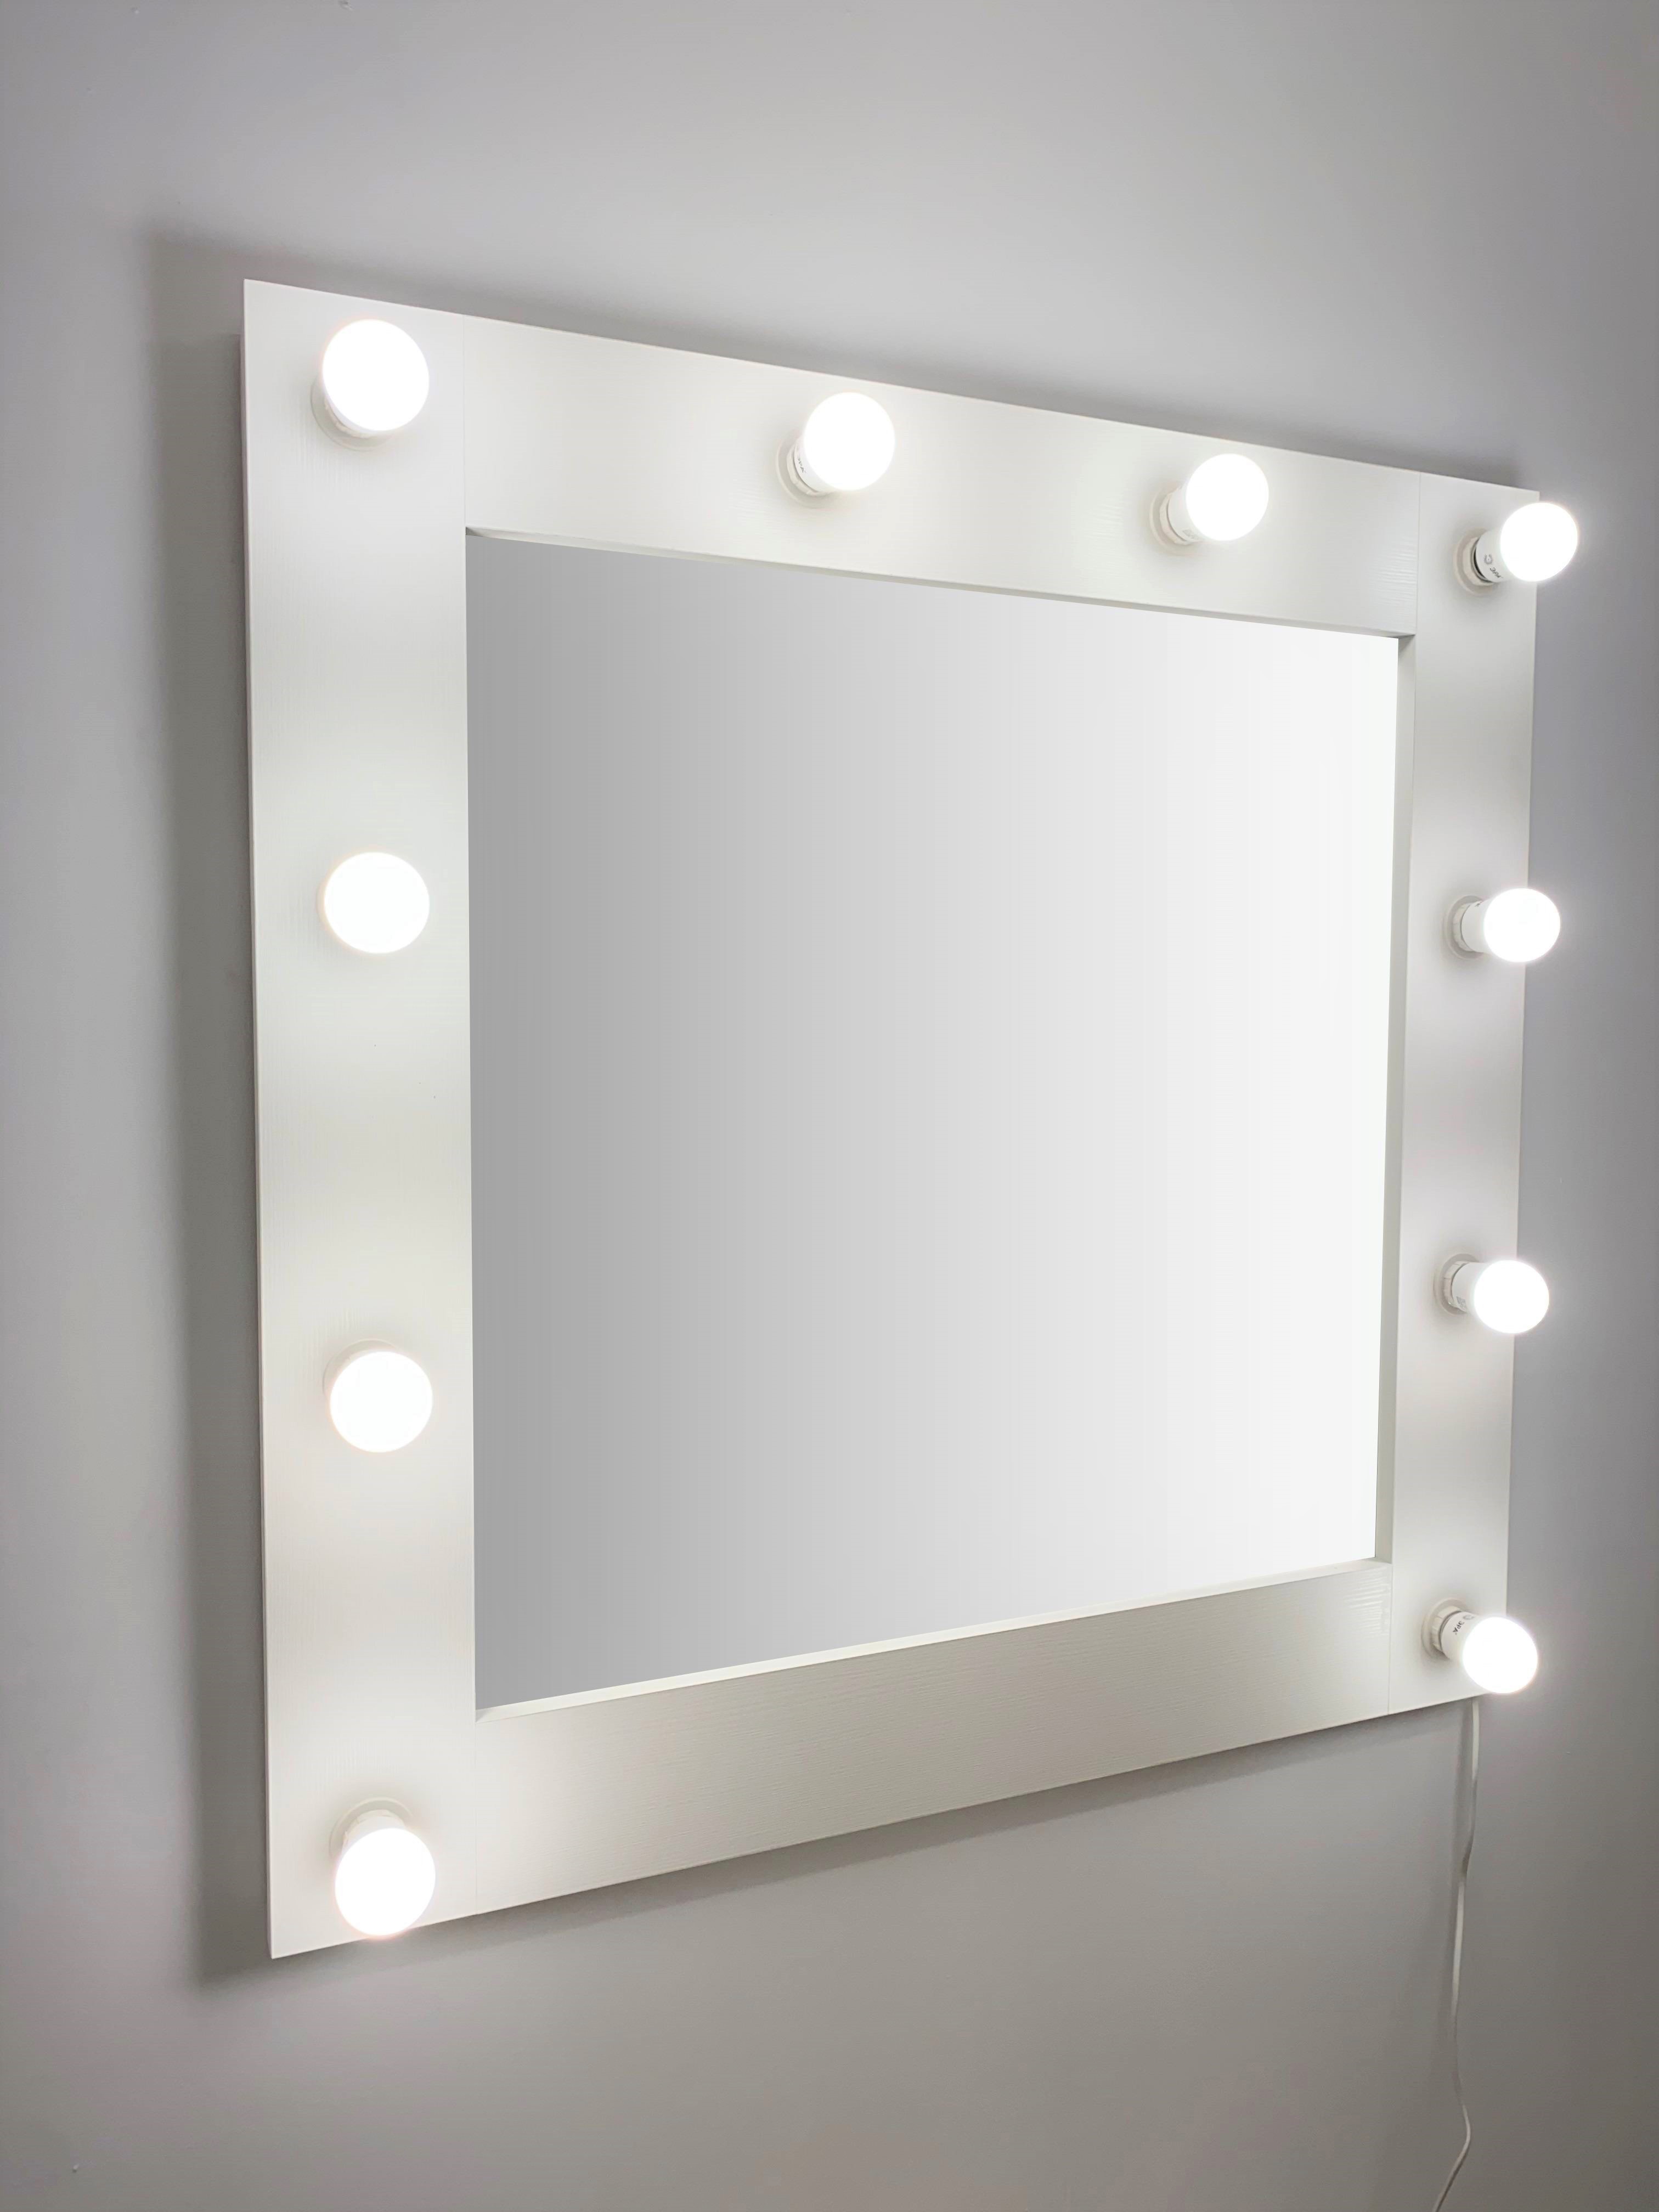 91053066 Гримерное зеркало с лампочками 80x80 см цвет белый STLM-0458976 BEAUTYUP